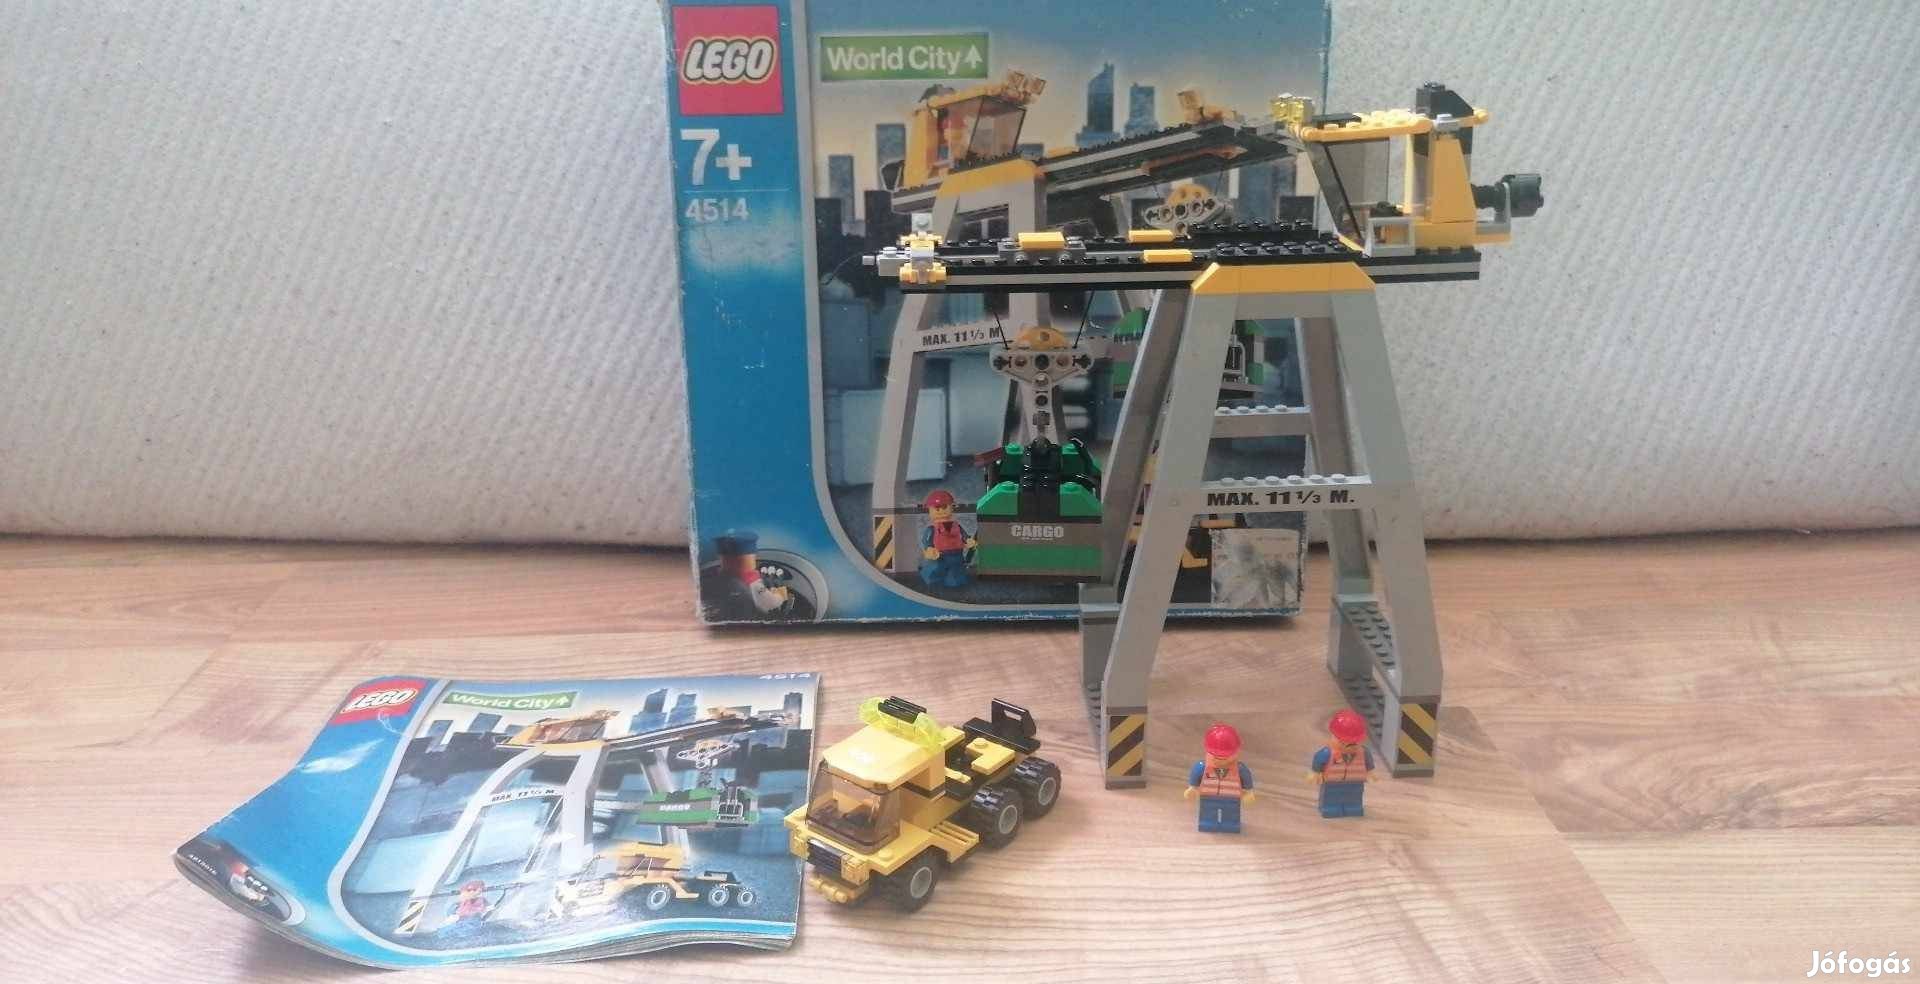 Lego City 4514 rakodódaru